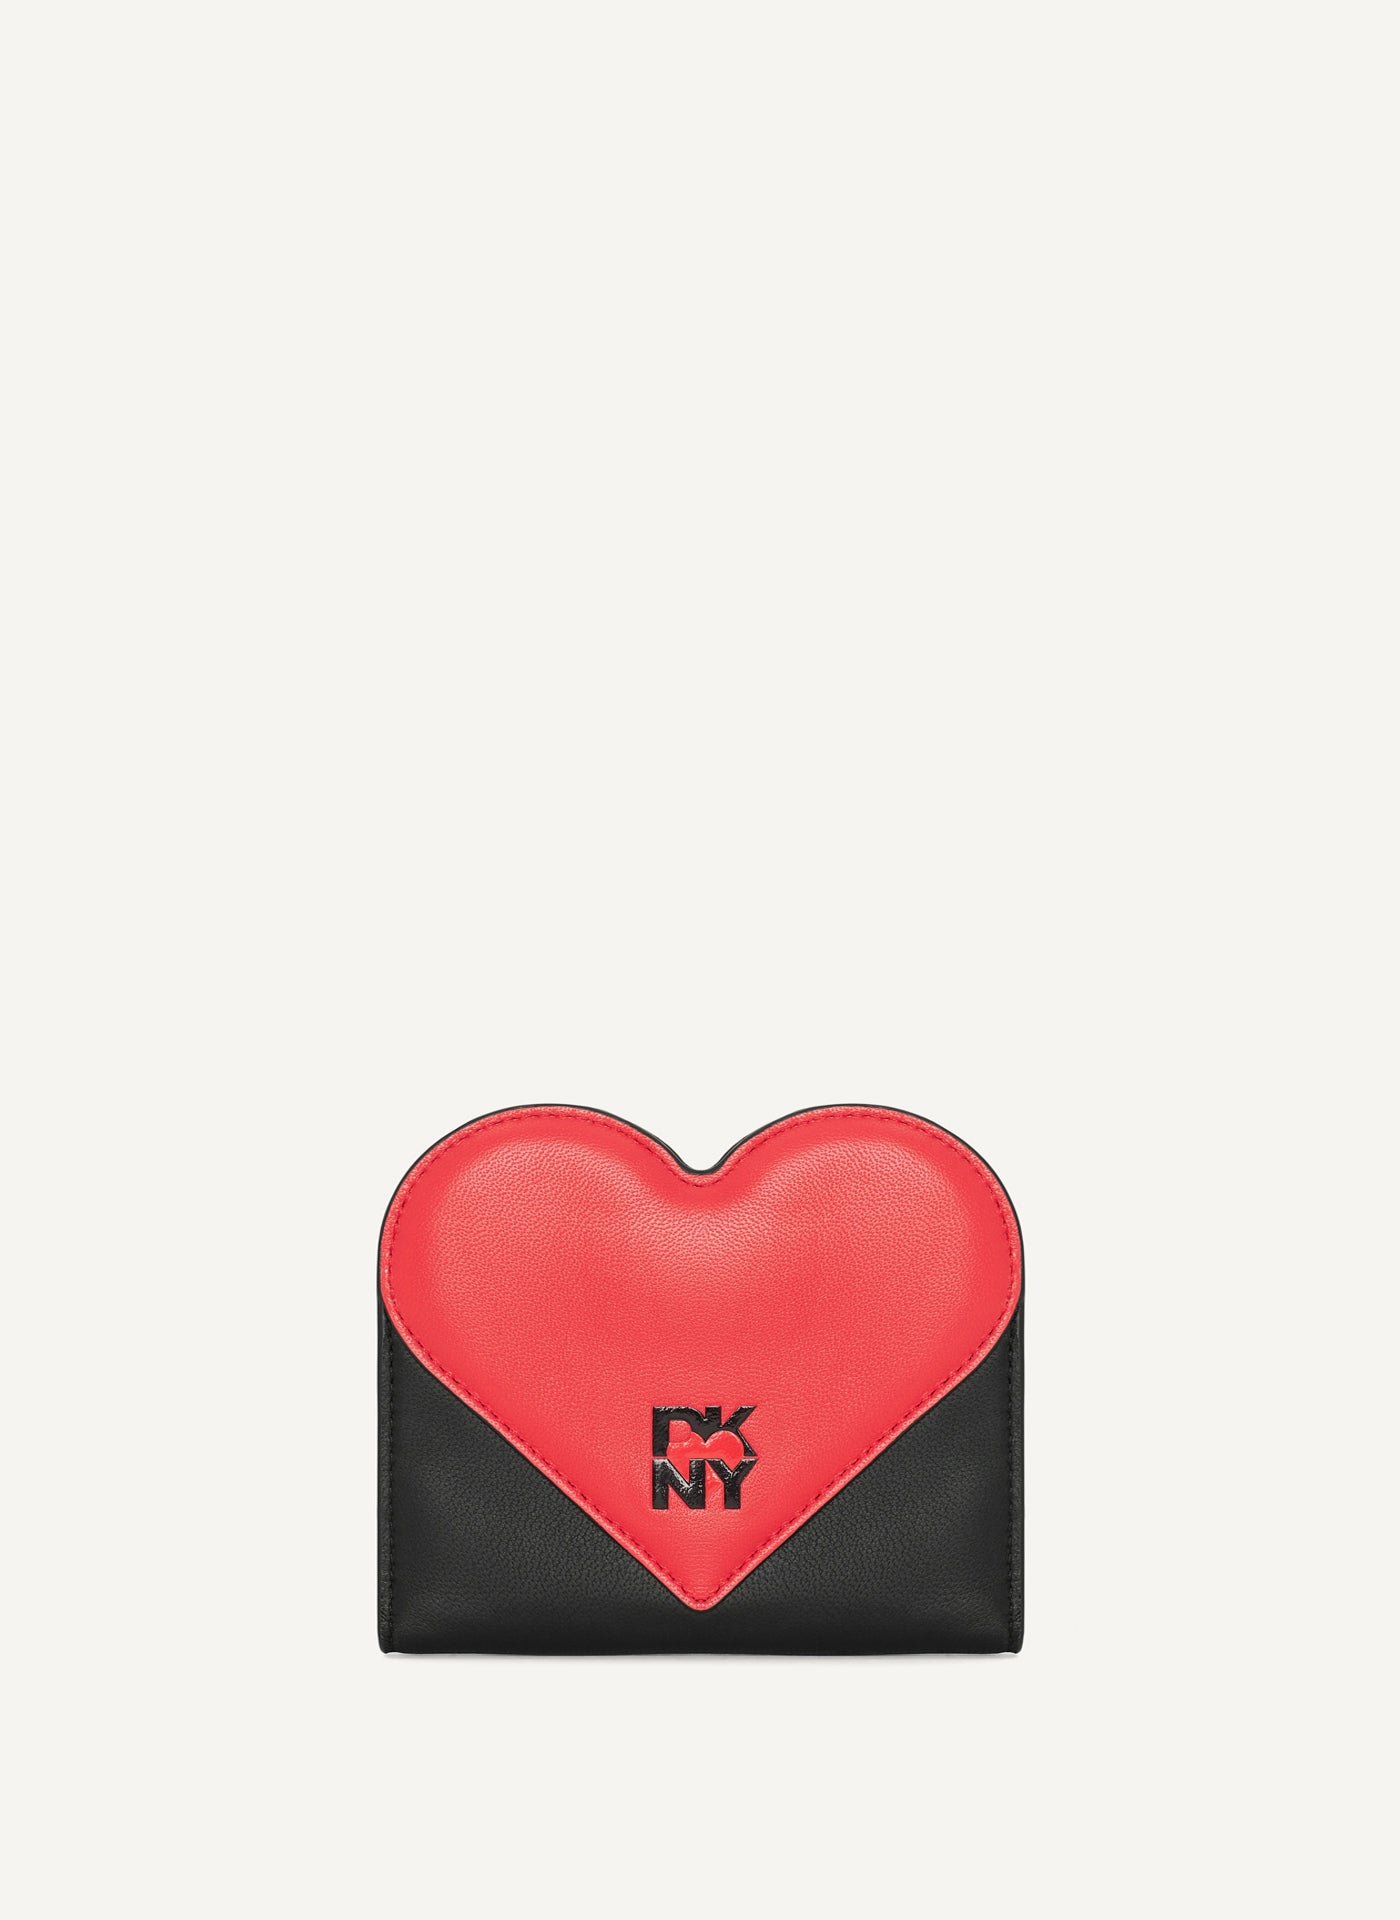 DKNY HEART OF NY CLIP WALLET,Black